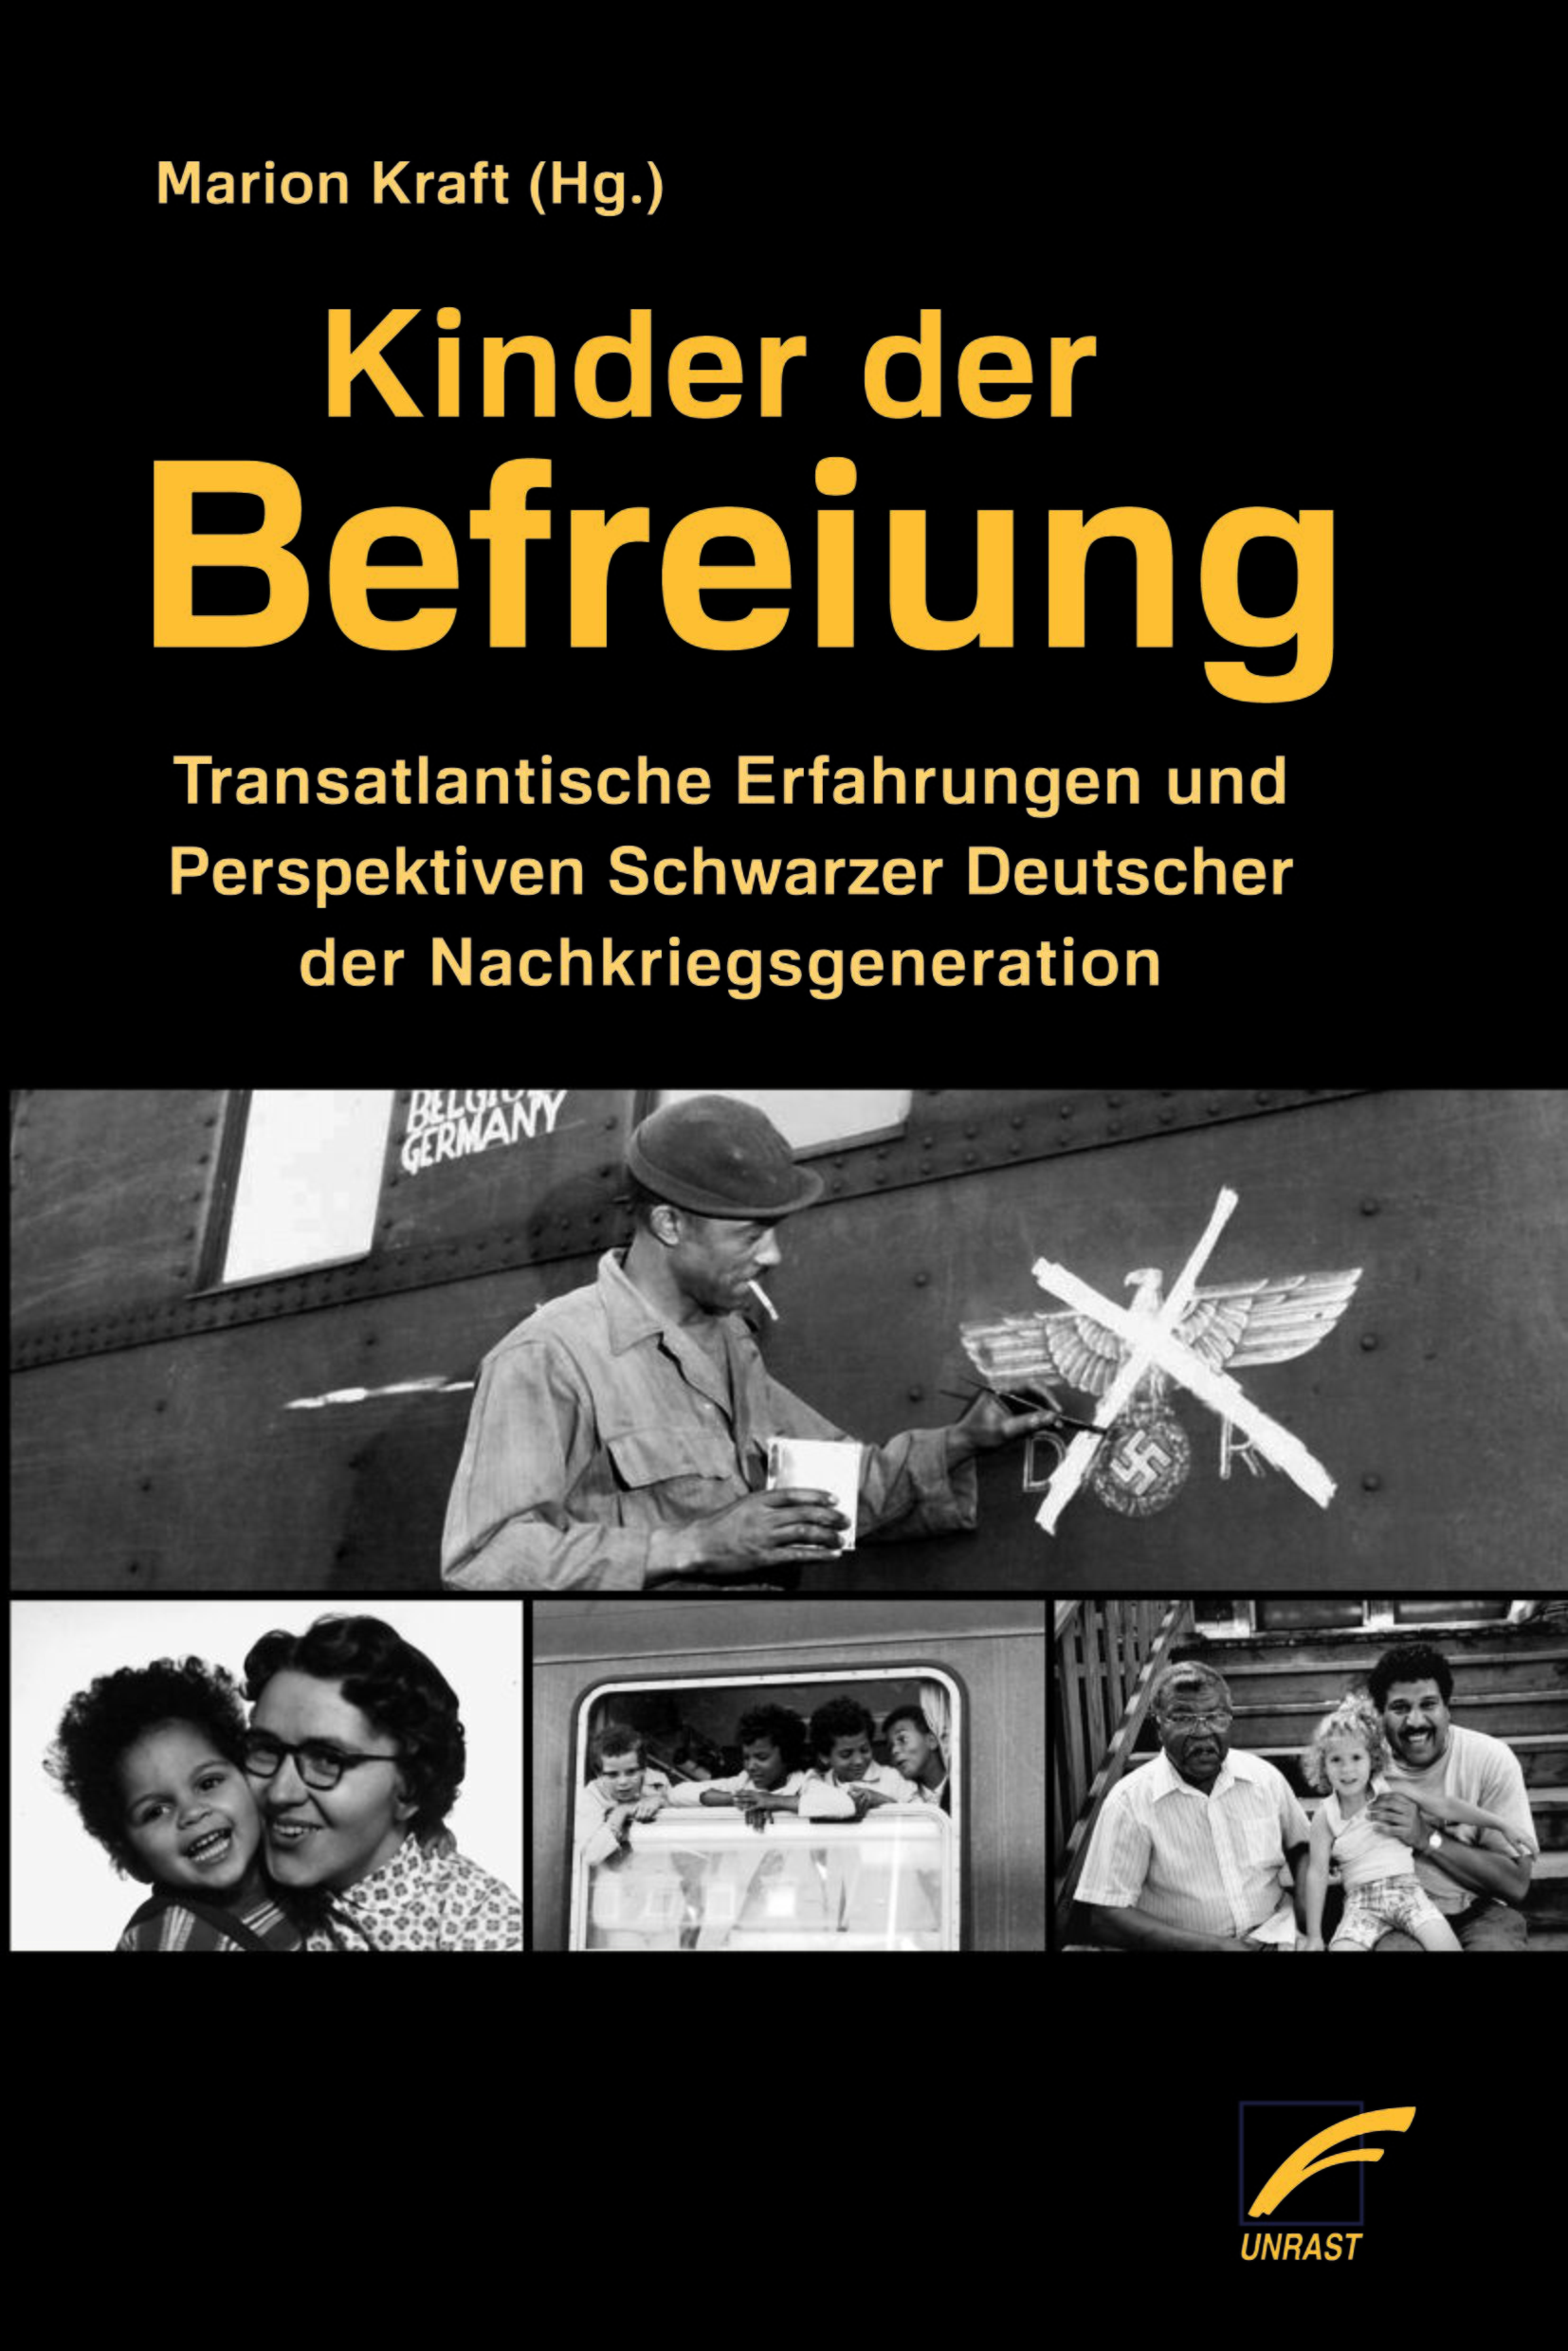 Nell’antologia “Kinder der Befreiung” edita da Marion Kraft i diretti interessati raccontano la loro vita e le esperienze nella Germania del dopoguerra.